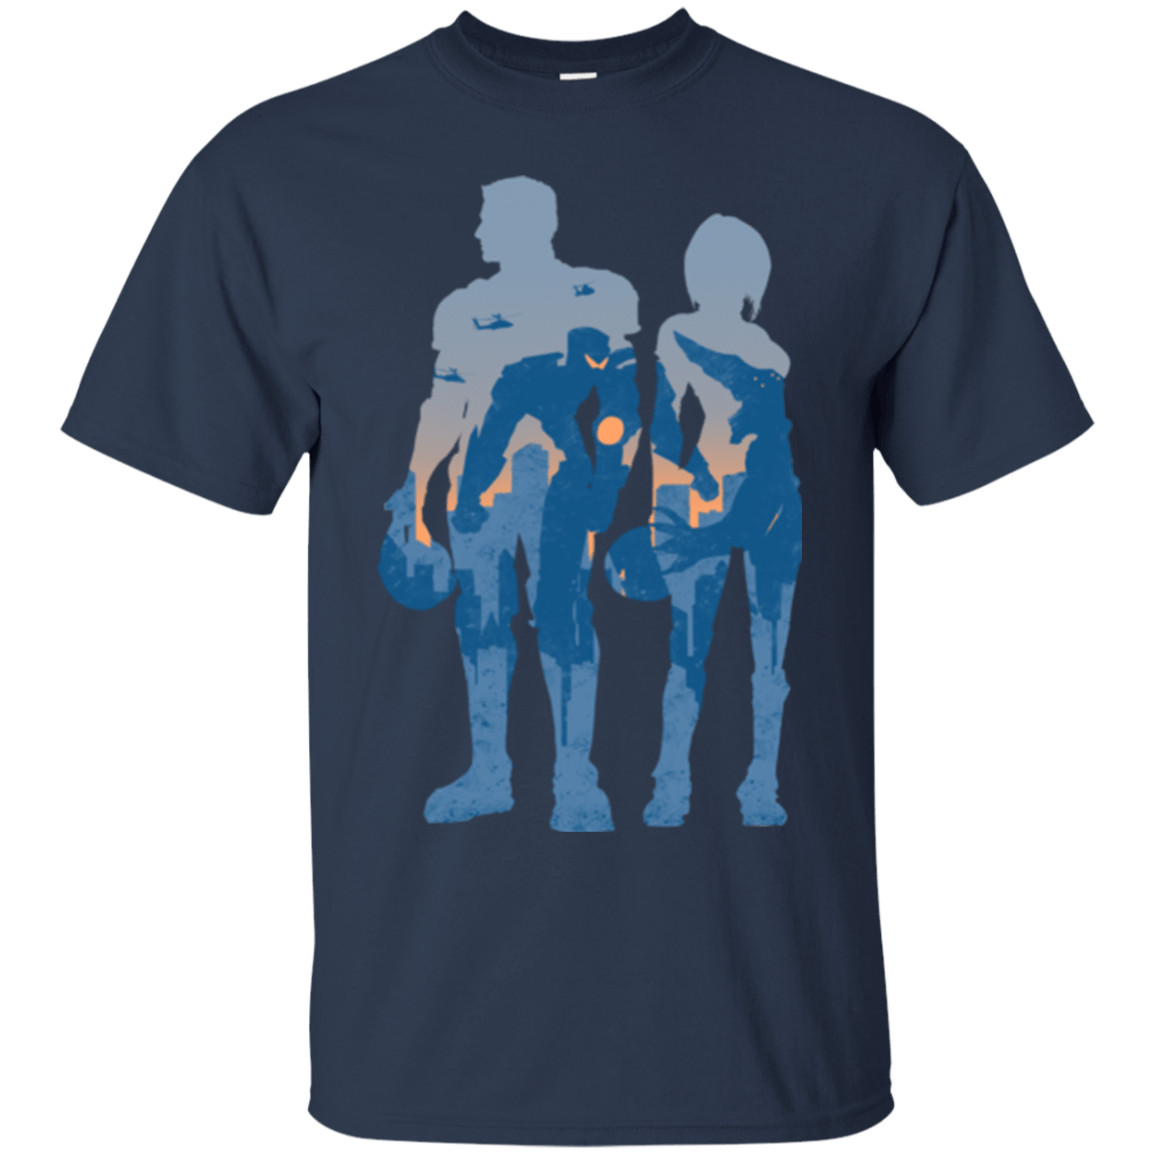 T-Shirts Navy / Small Team danger T-Shirt